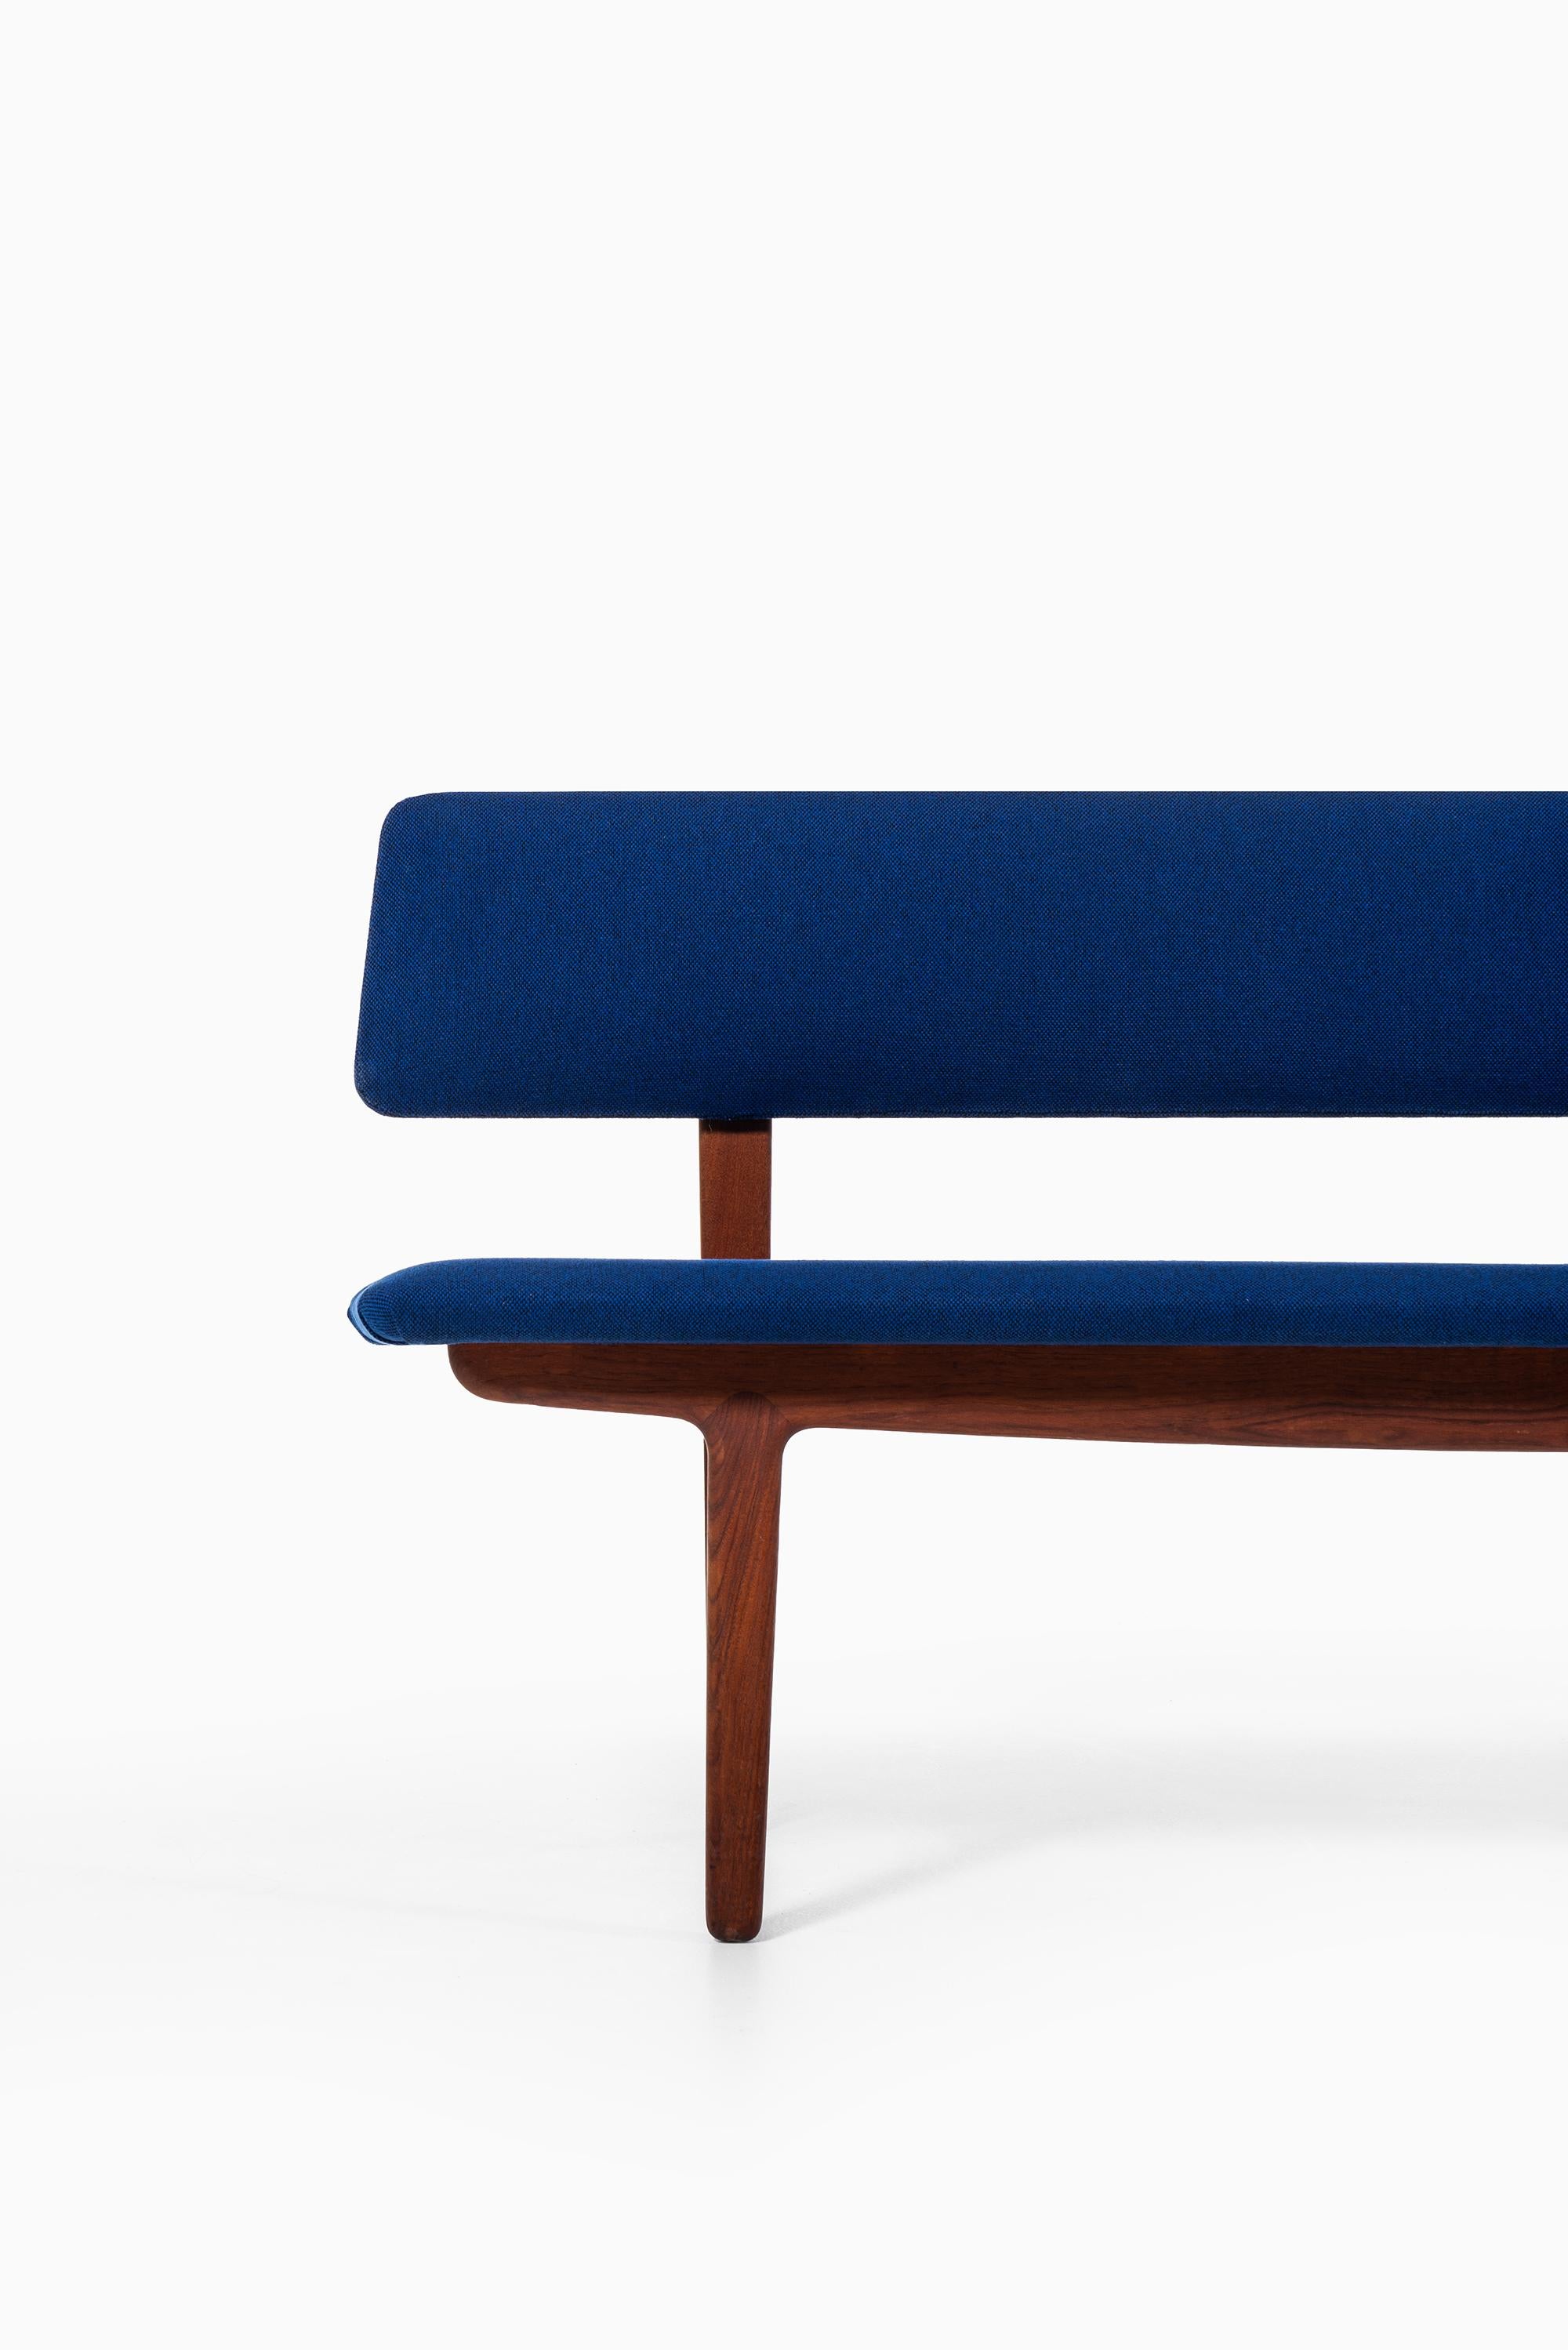 Rare bench or sofa designed by Ejnar Larsen & Aksel Bender Madsen. Produced by Næstved Møbler in Denmark.